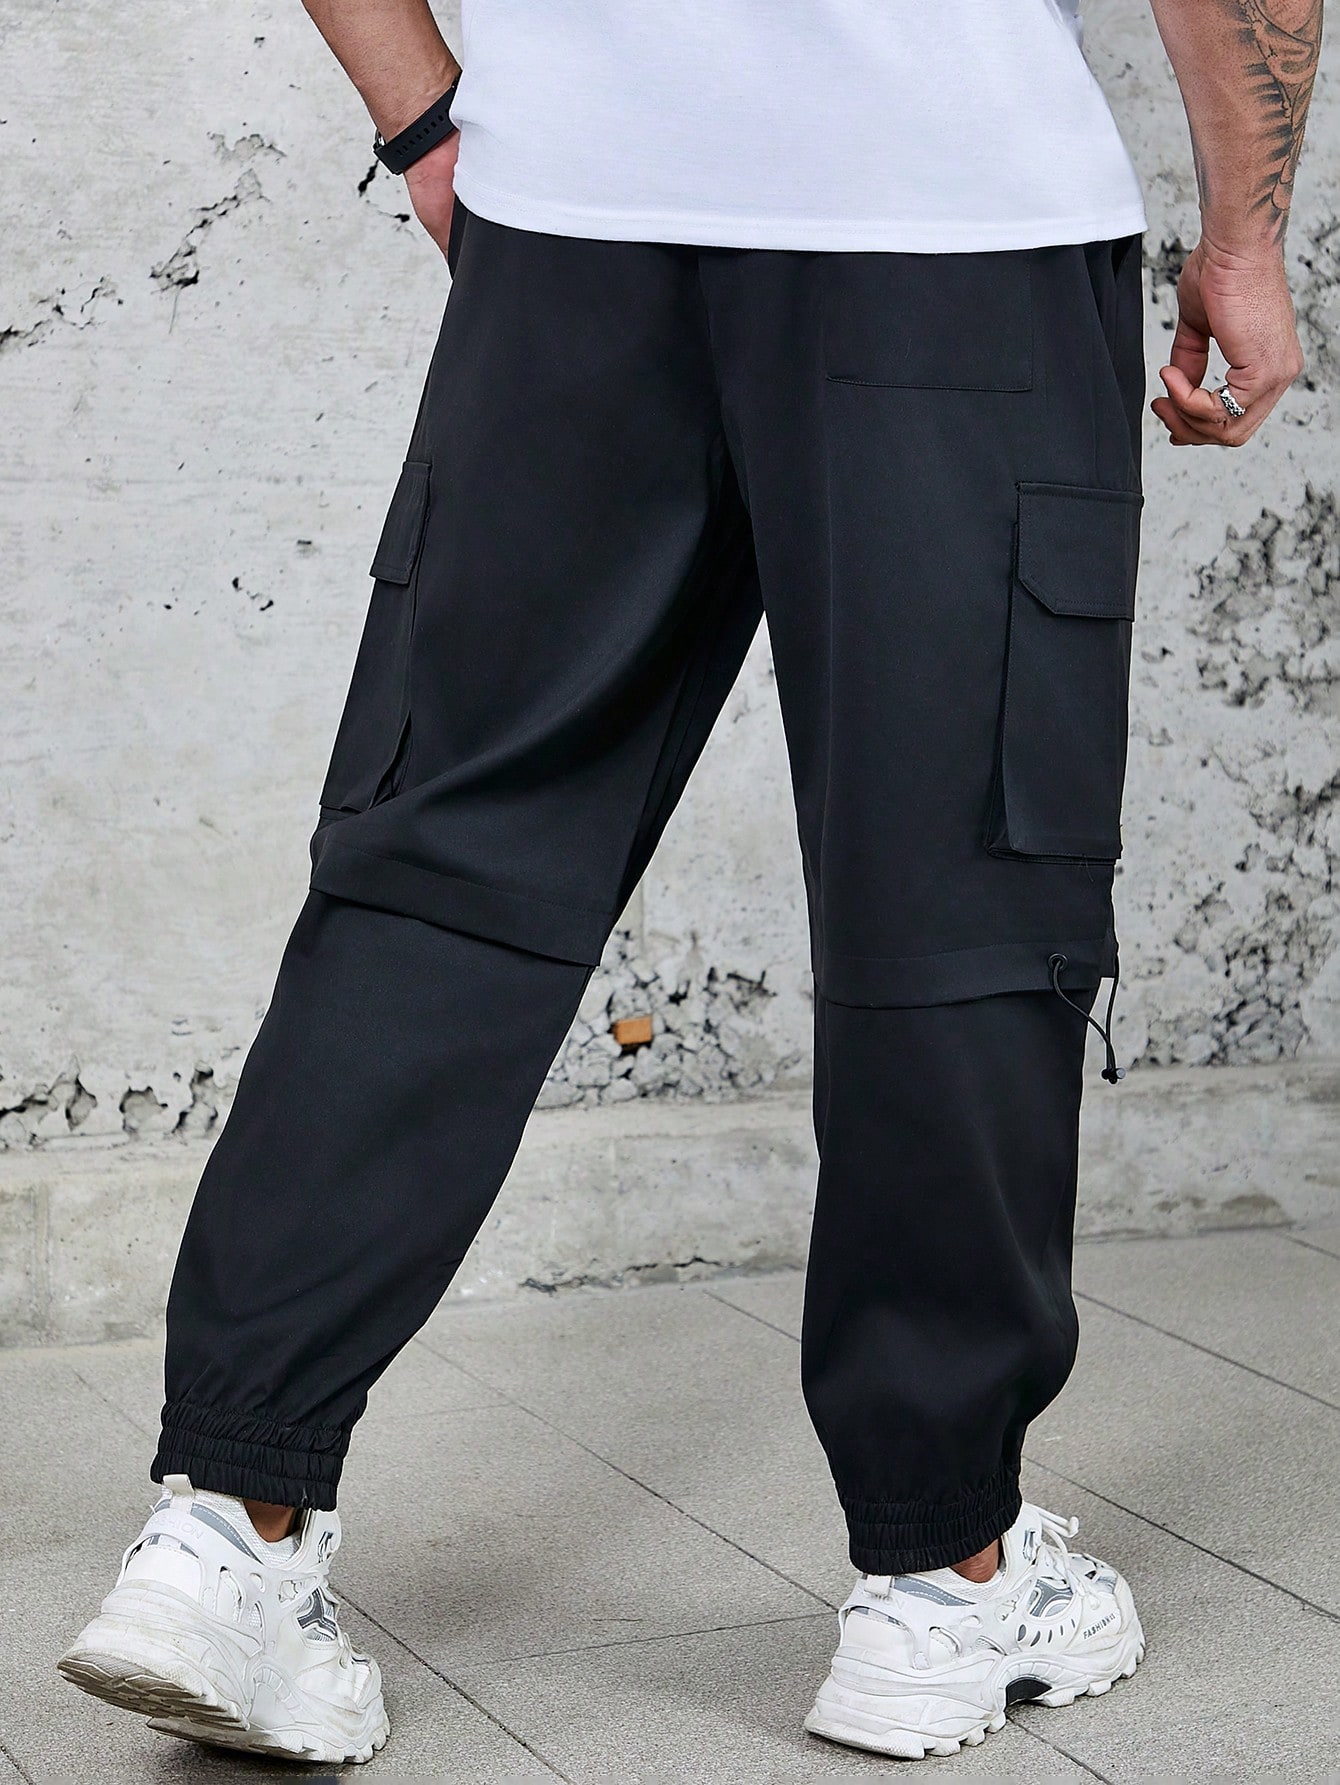 Мужские повседневные брюки больших размеров Manfinity Hypemode с карманами с клапанами и шнурком на талии, черный